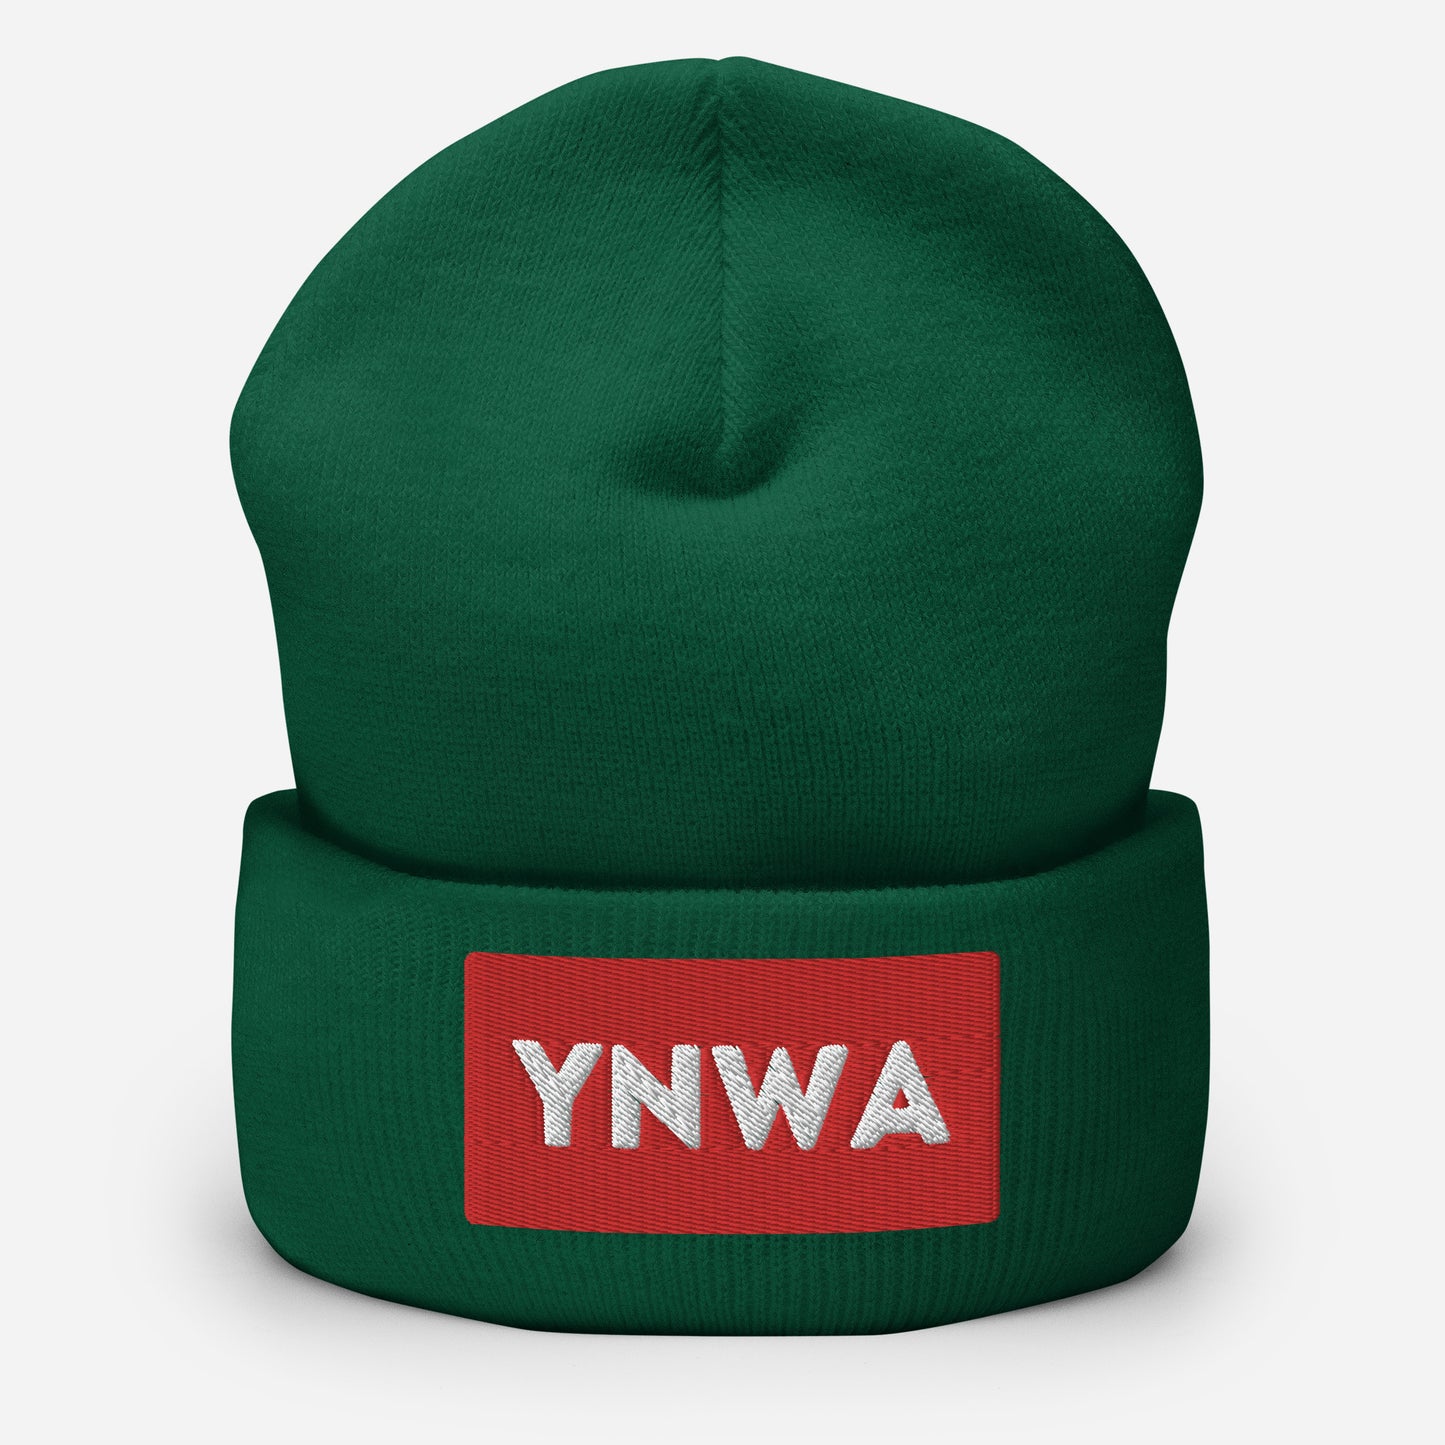 YNWA Cuffed Beanie Hat